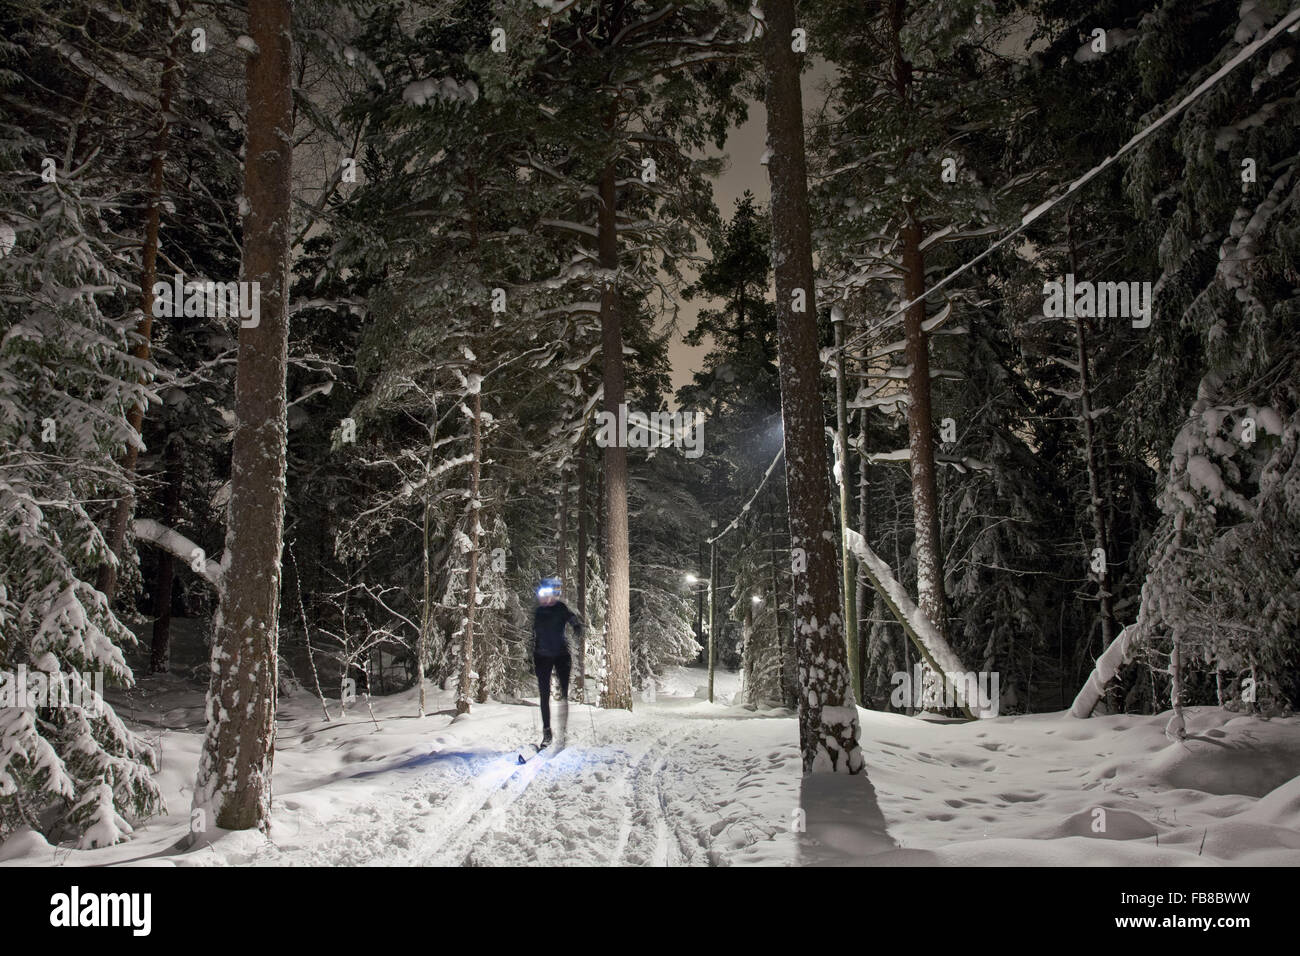 Sweden, Sodermanland, Stockholm, Skarpnack, Nackareservatet, Woman skiing in forest Stock Photo